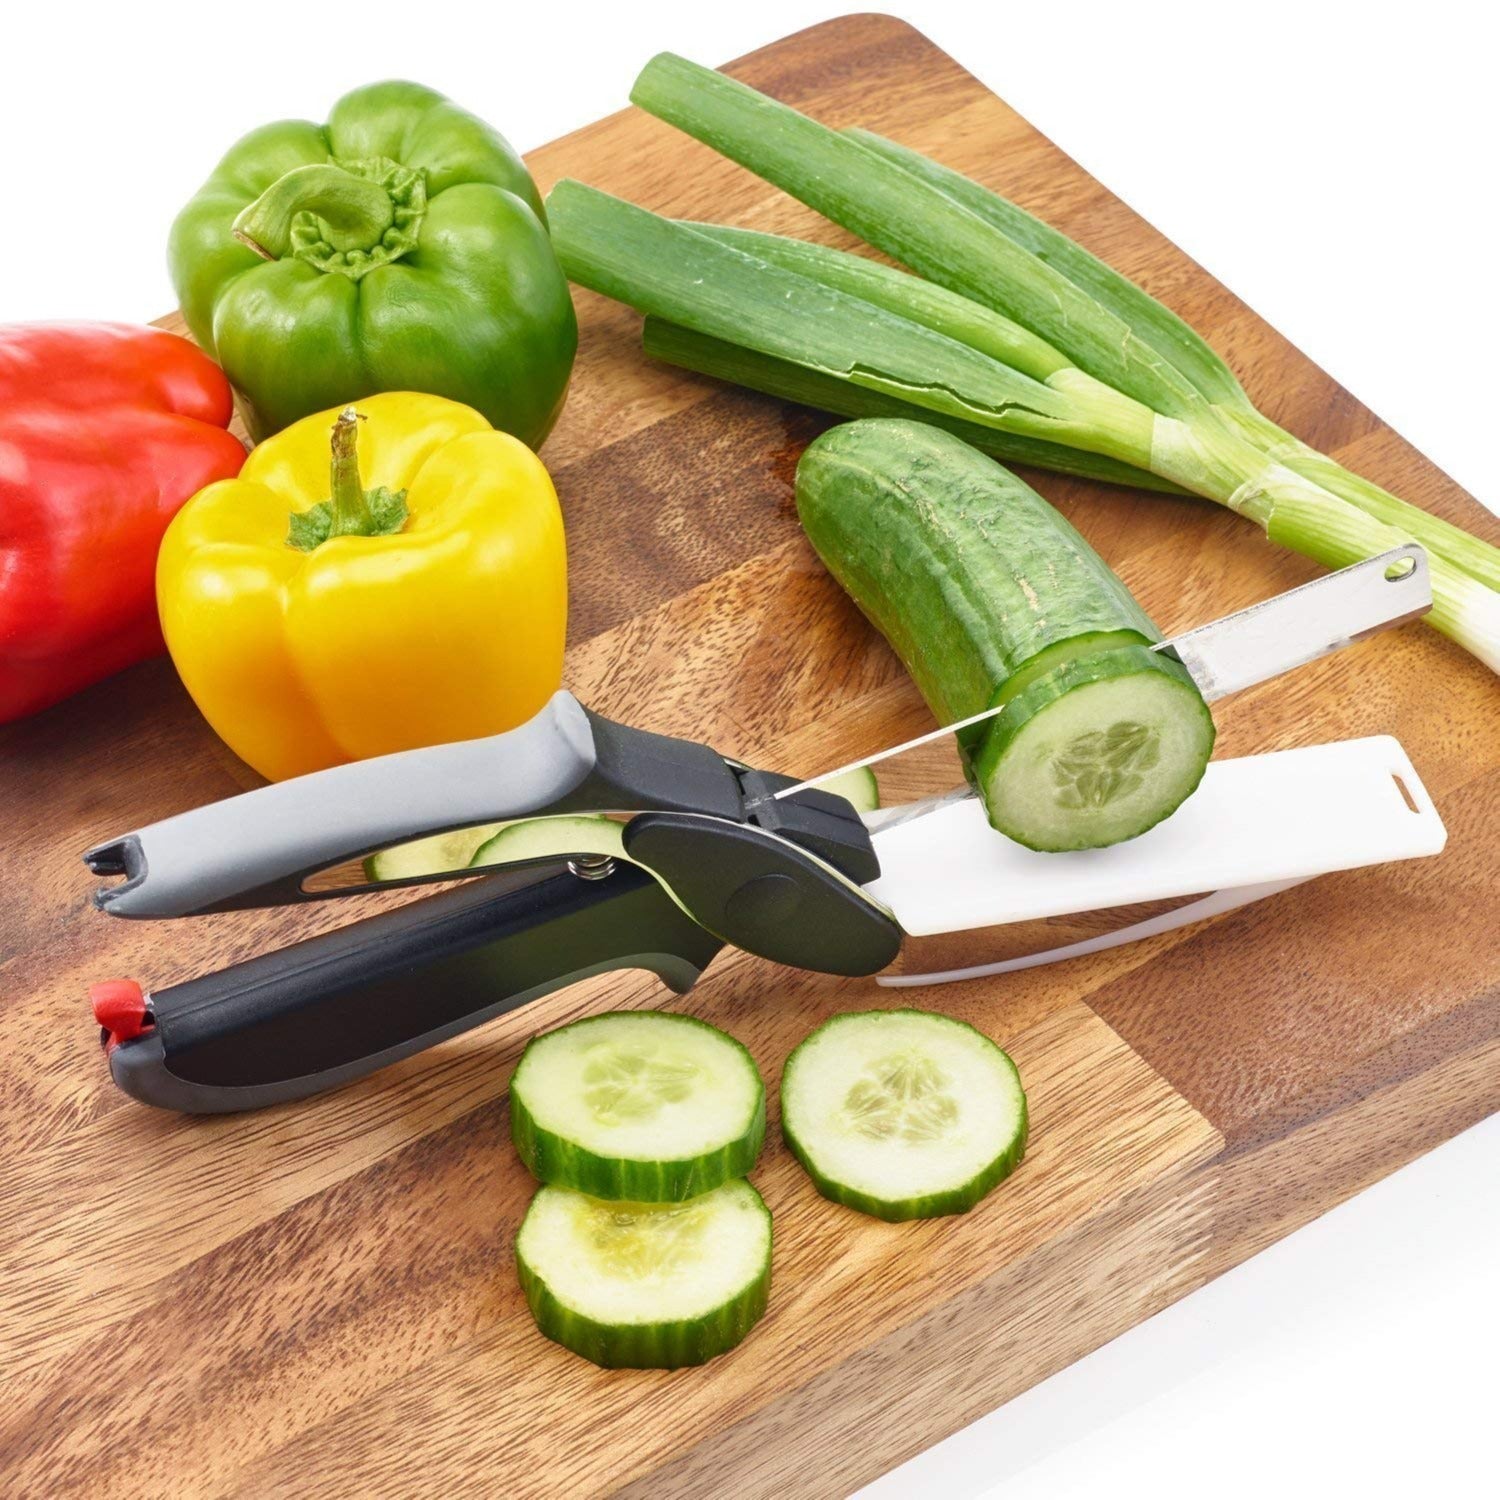 Magic Cleaver Cutter - 2 in 1 Kitchen Knife